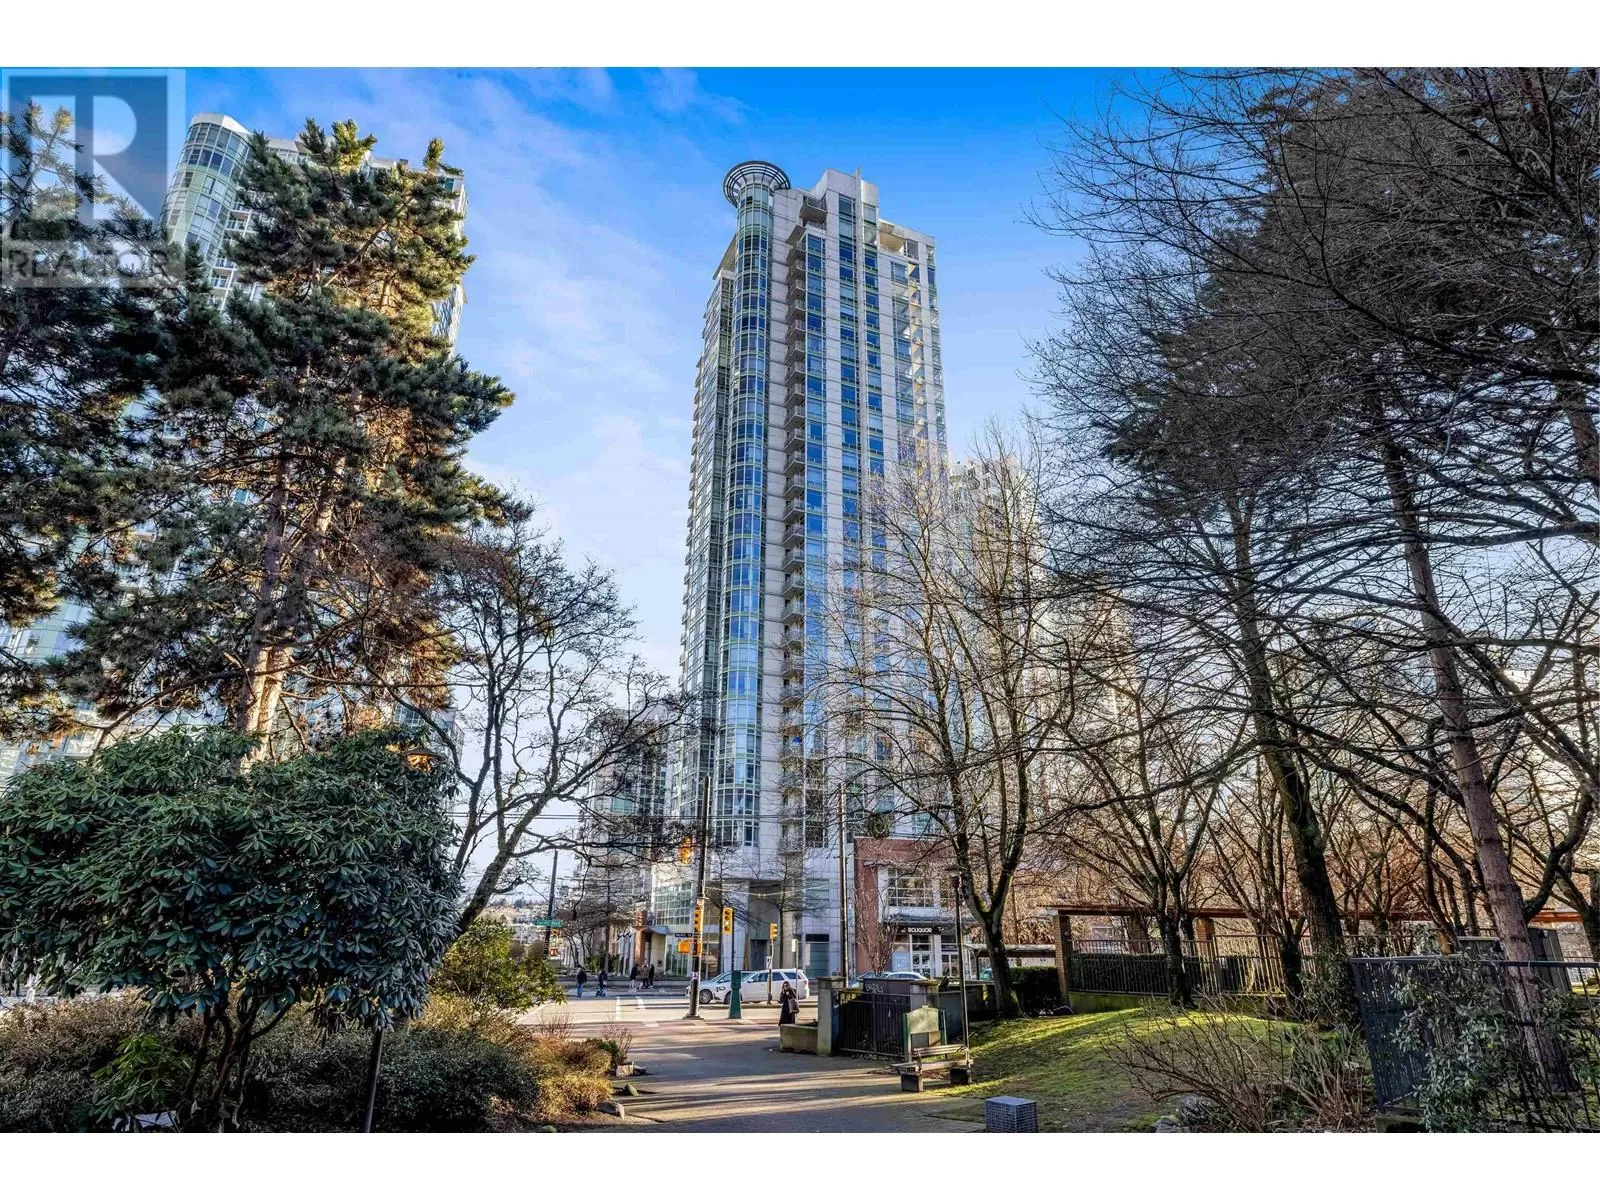 Apartment for rent: 503 198 Aquarius Mews, Vancouver, British Columbia V6Z 2Y4